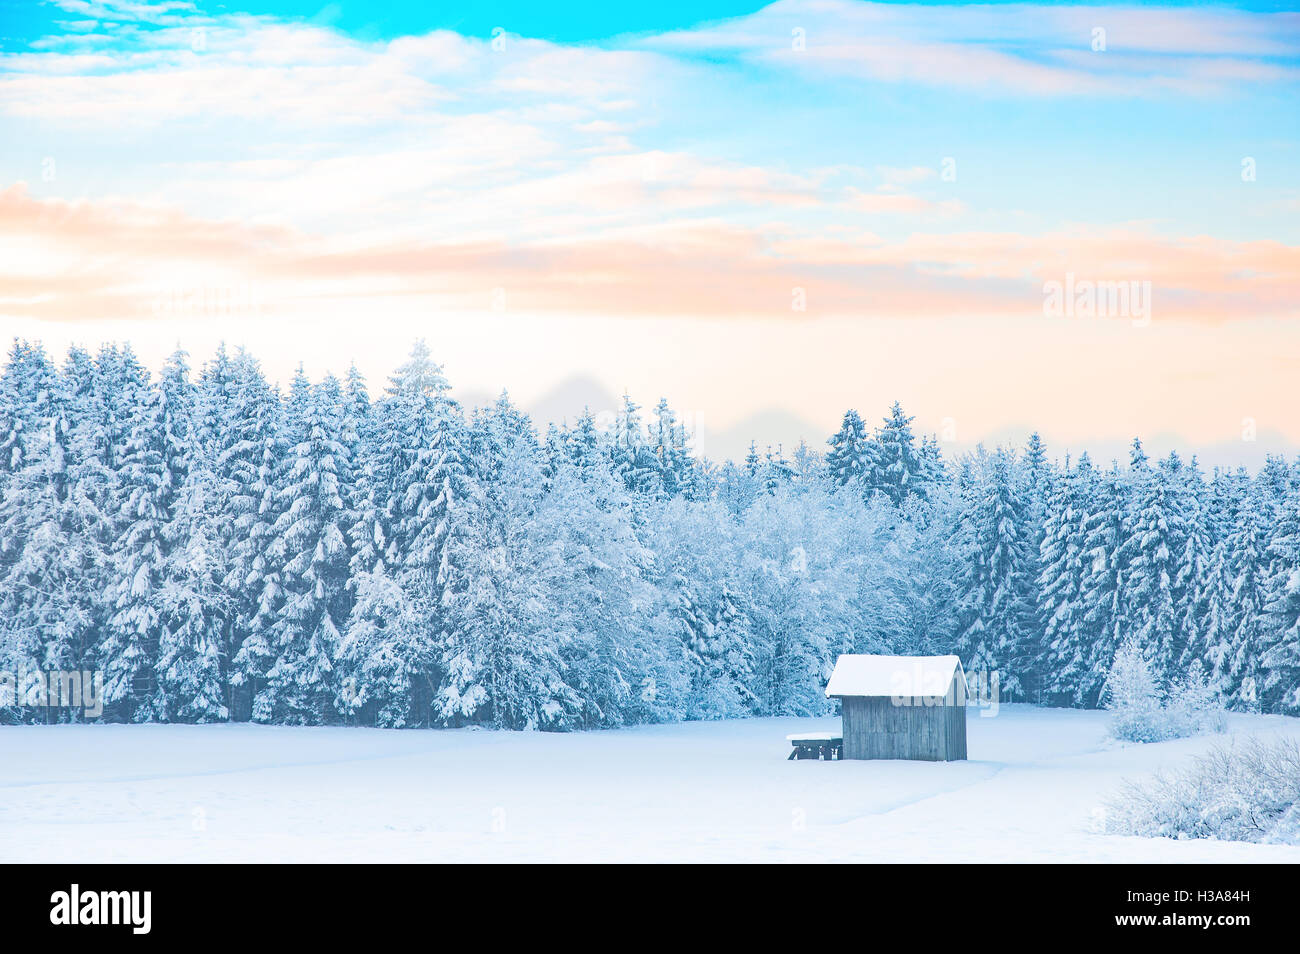 La mattina presto in inverno il paesaggio rurale con coperte di neve la foresta e sfumature pastello colorato alba sunrise sky Foto Stock